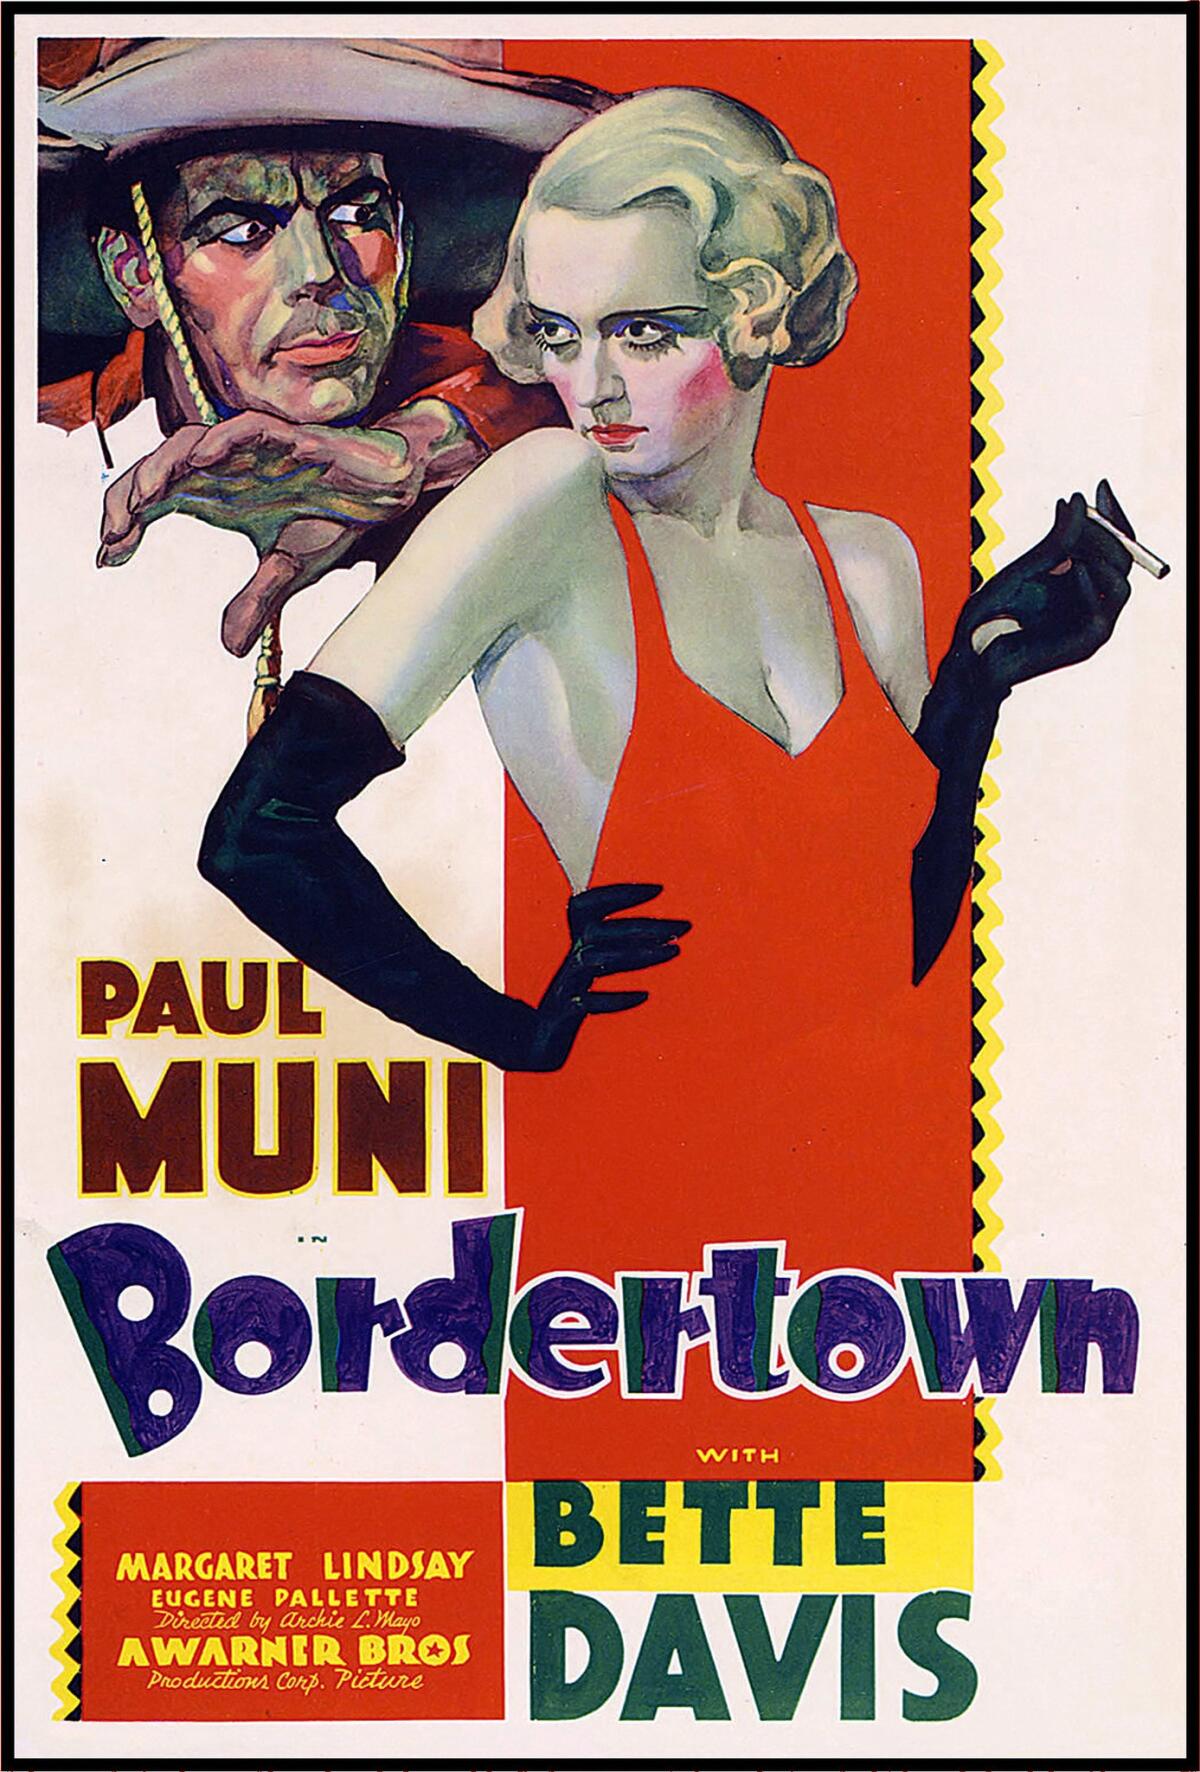 The full poster artwork for "Bordertown."